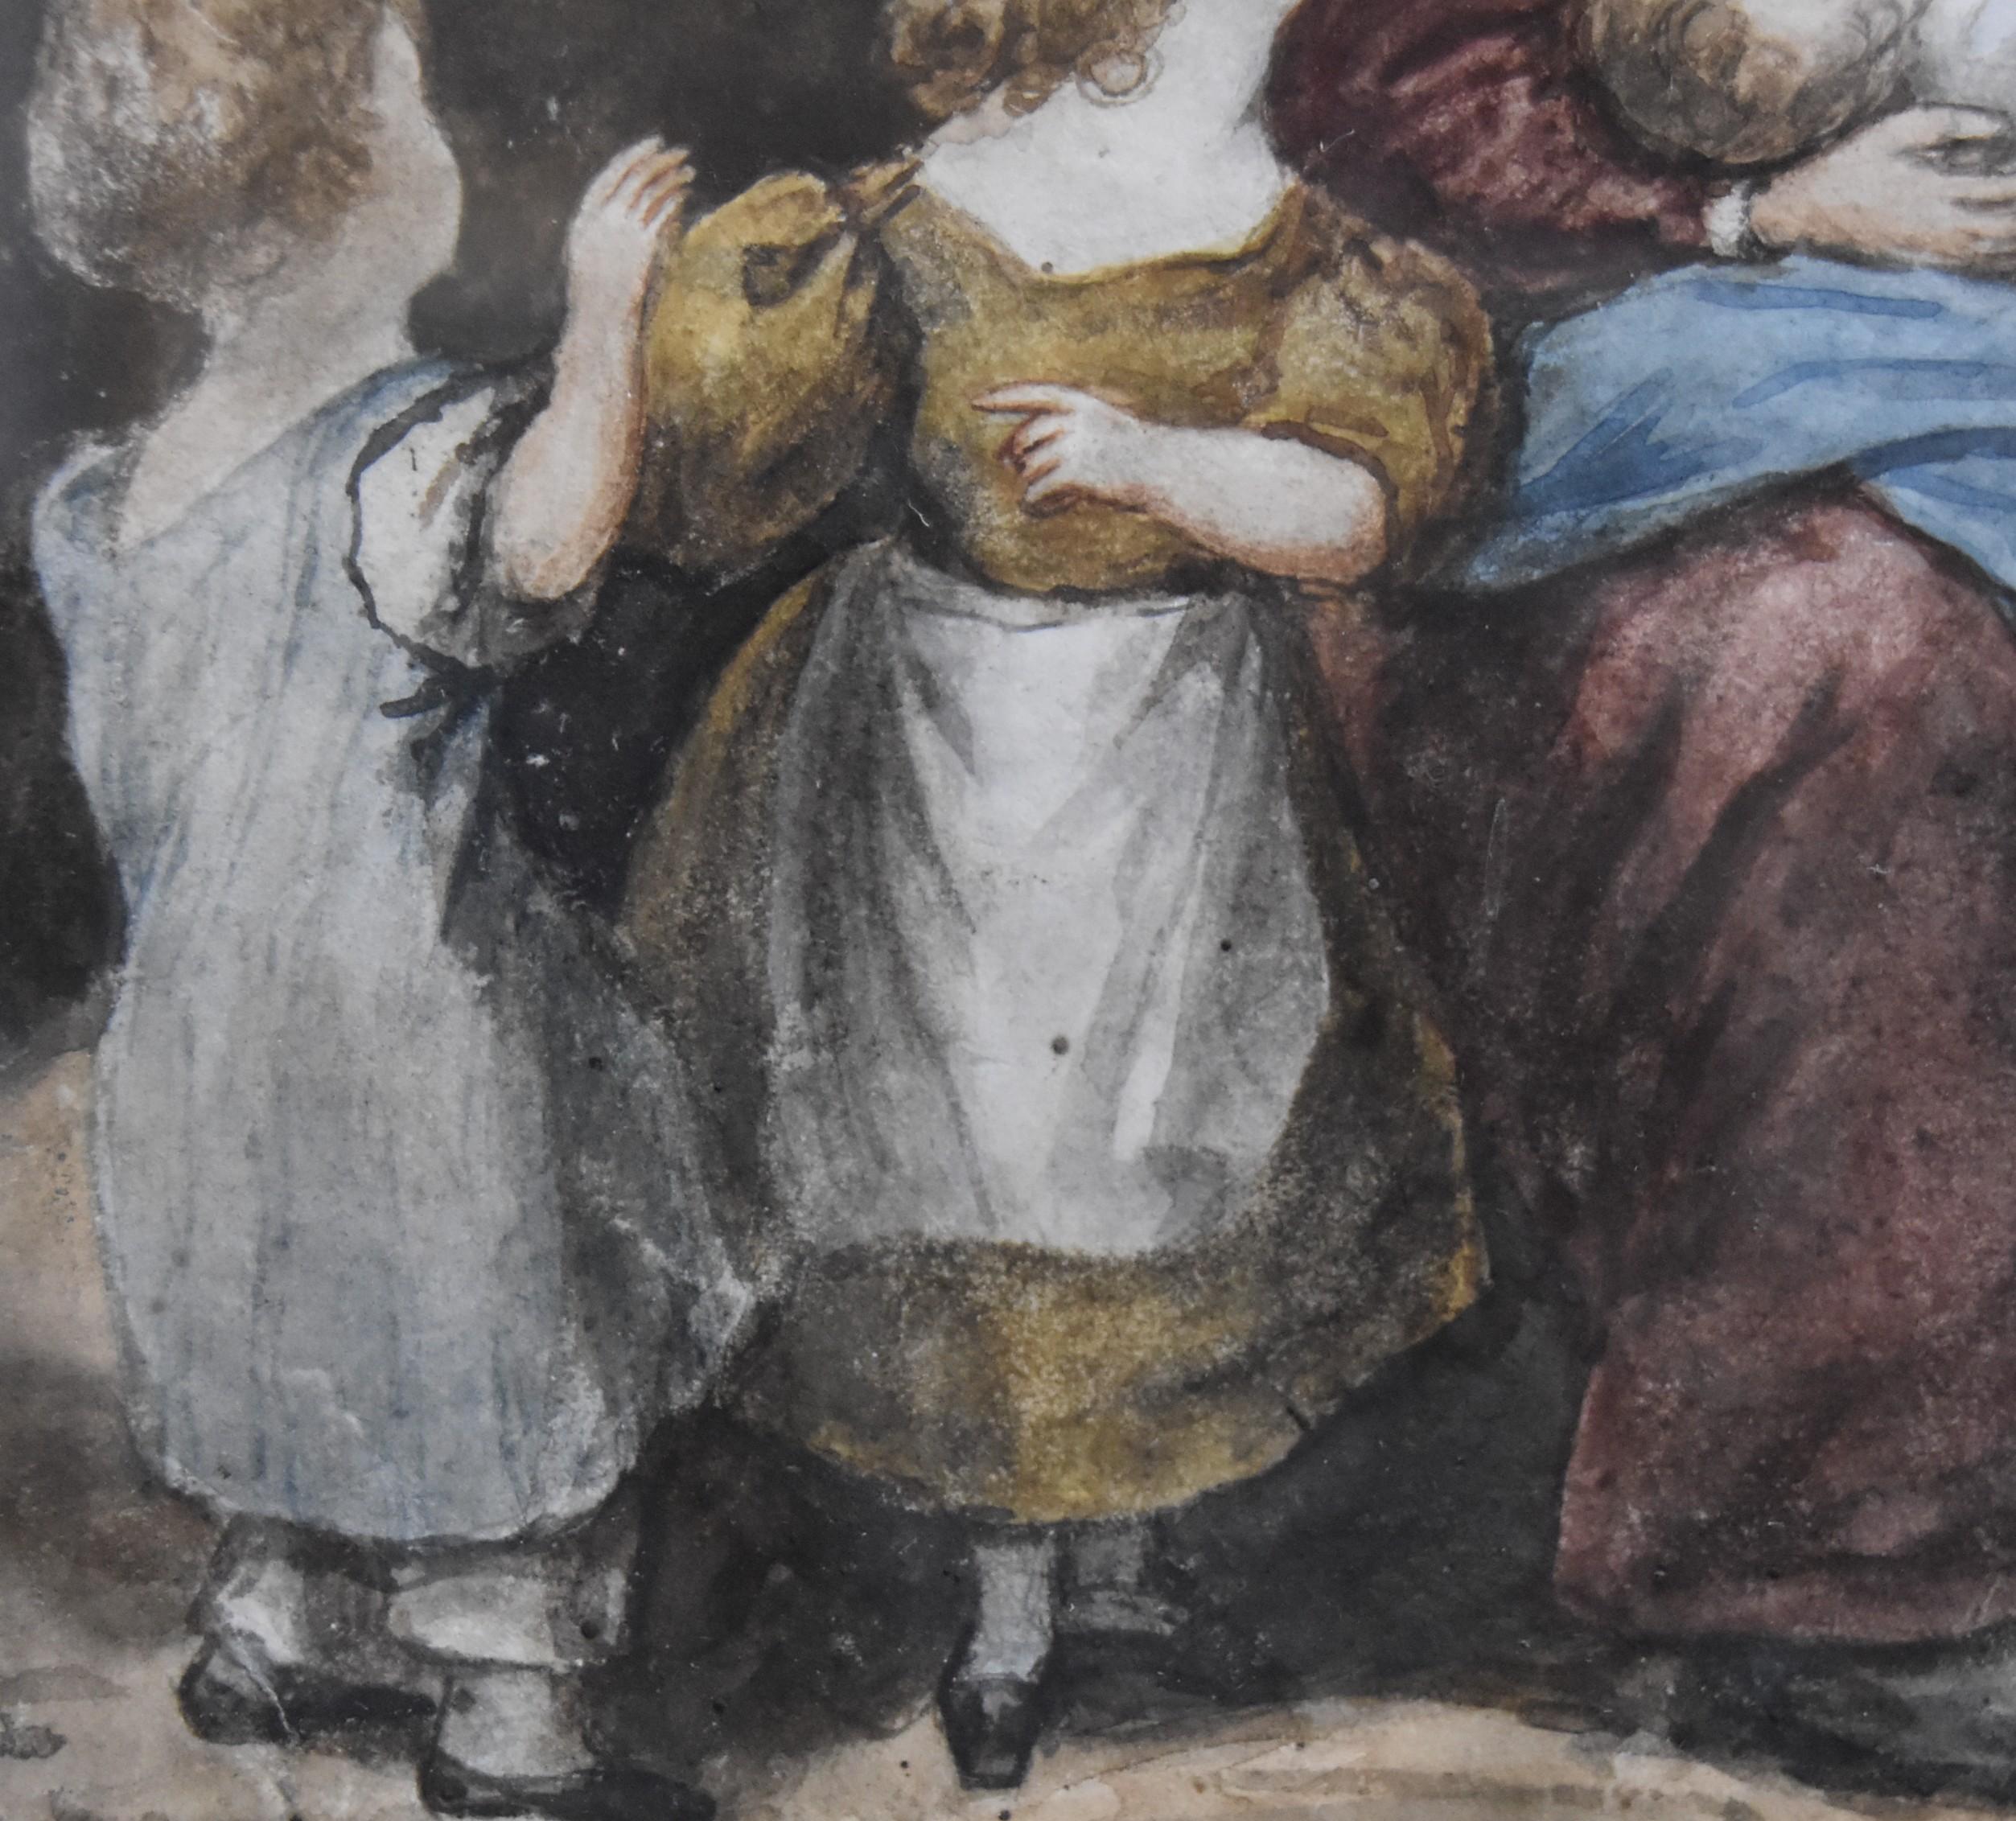 Zugeschrieben an Eugène Devéria (1805-1865) 
La Famille heureuse (Die glückliche Familie)
Aquarell auf Papier
23 x 18 cm
In recht gutem Zustand: ein kleiner Riss im oberen linken Rand und ein weiterer im unteren linken Rand (siehe Detailfotos)
In